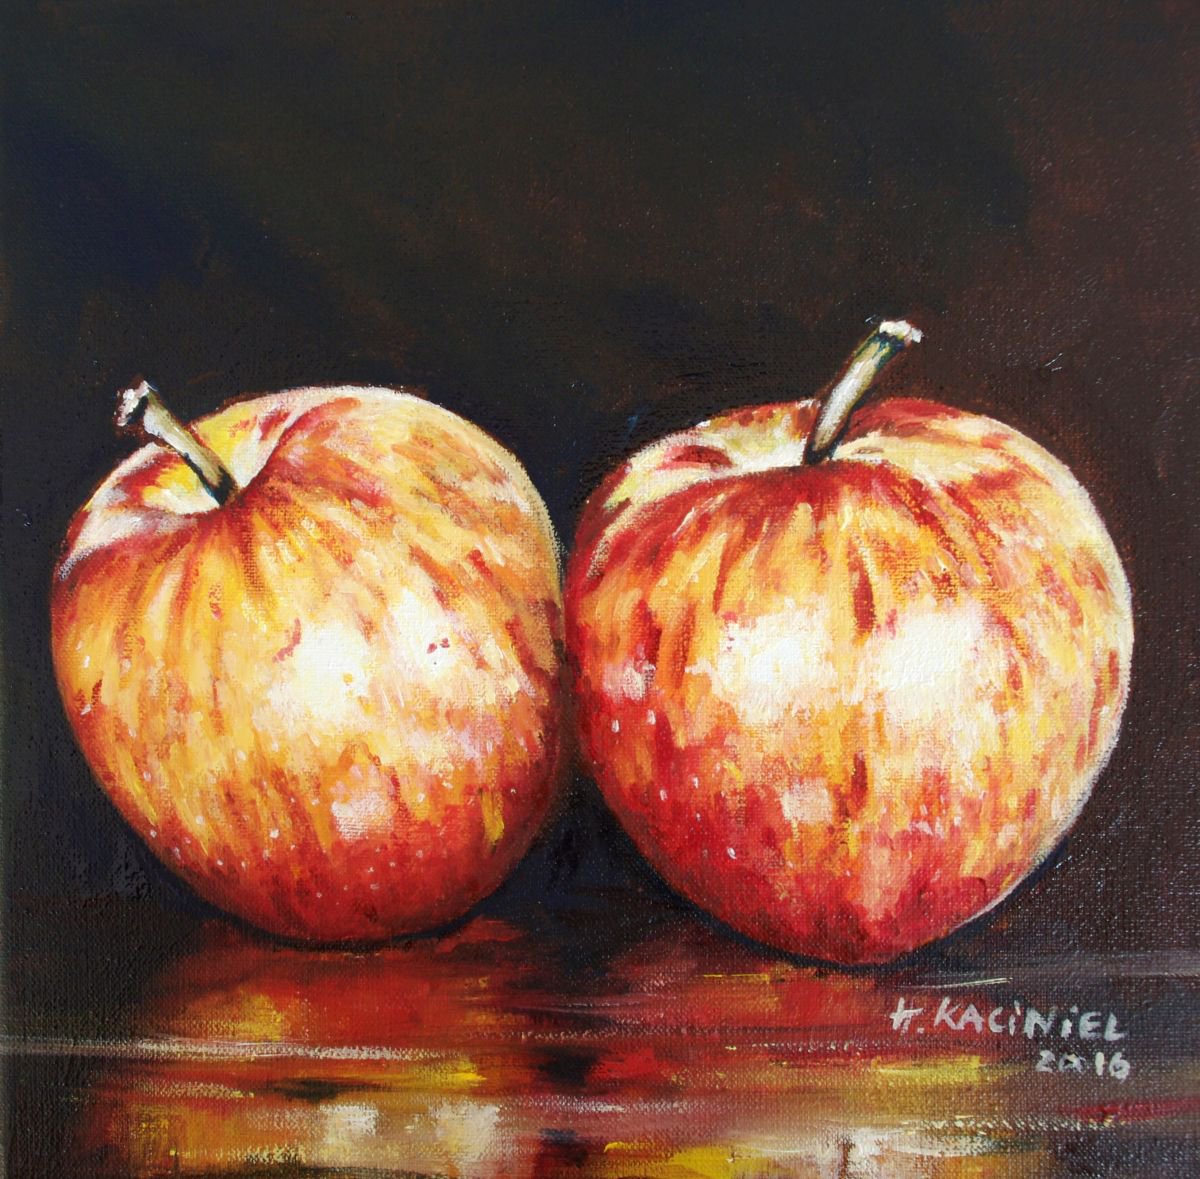 A Pair of Apples by Hanna Kaciniel